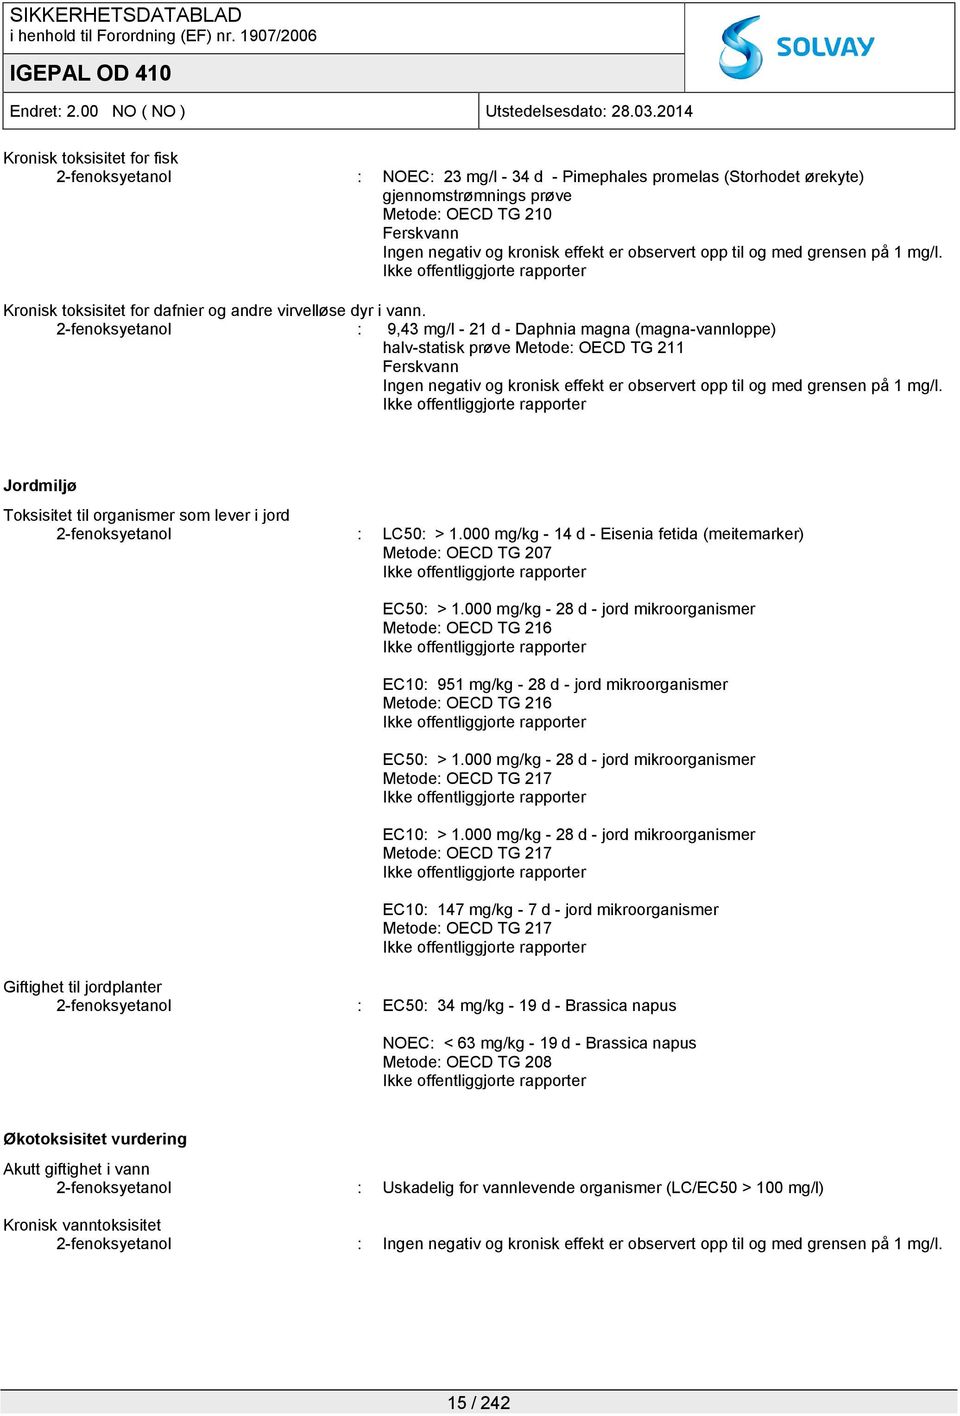 2-fenoksyetanol : 9,43 mg/l - 21 d - Daphnia magna (magna-vannloppe) halv-statisk prøve Metode: OECD TG 211 Ferskvann Ingen negativ og kronisk effekt er observert opp til og med grensen på 1 mg/l.